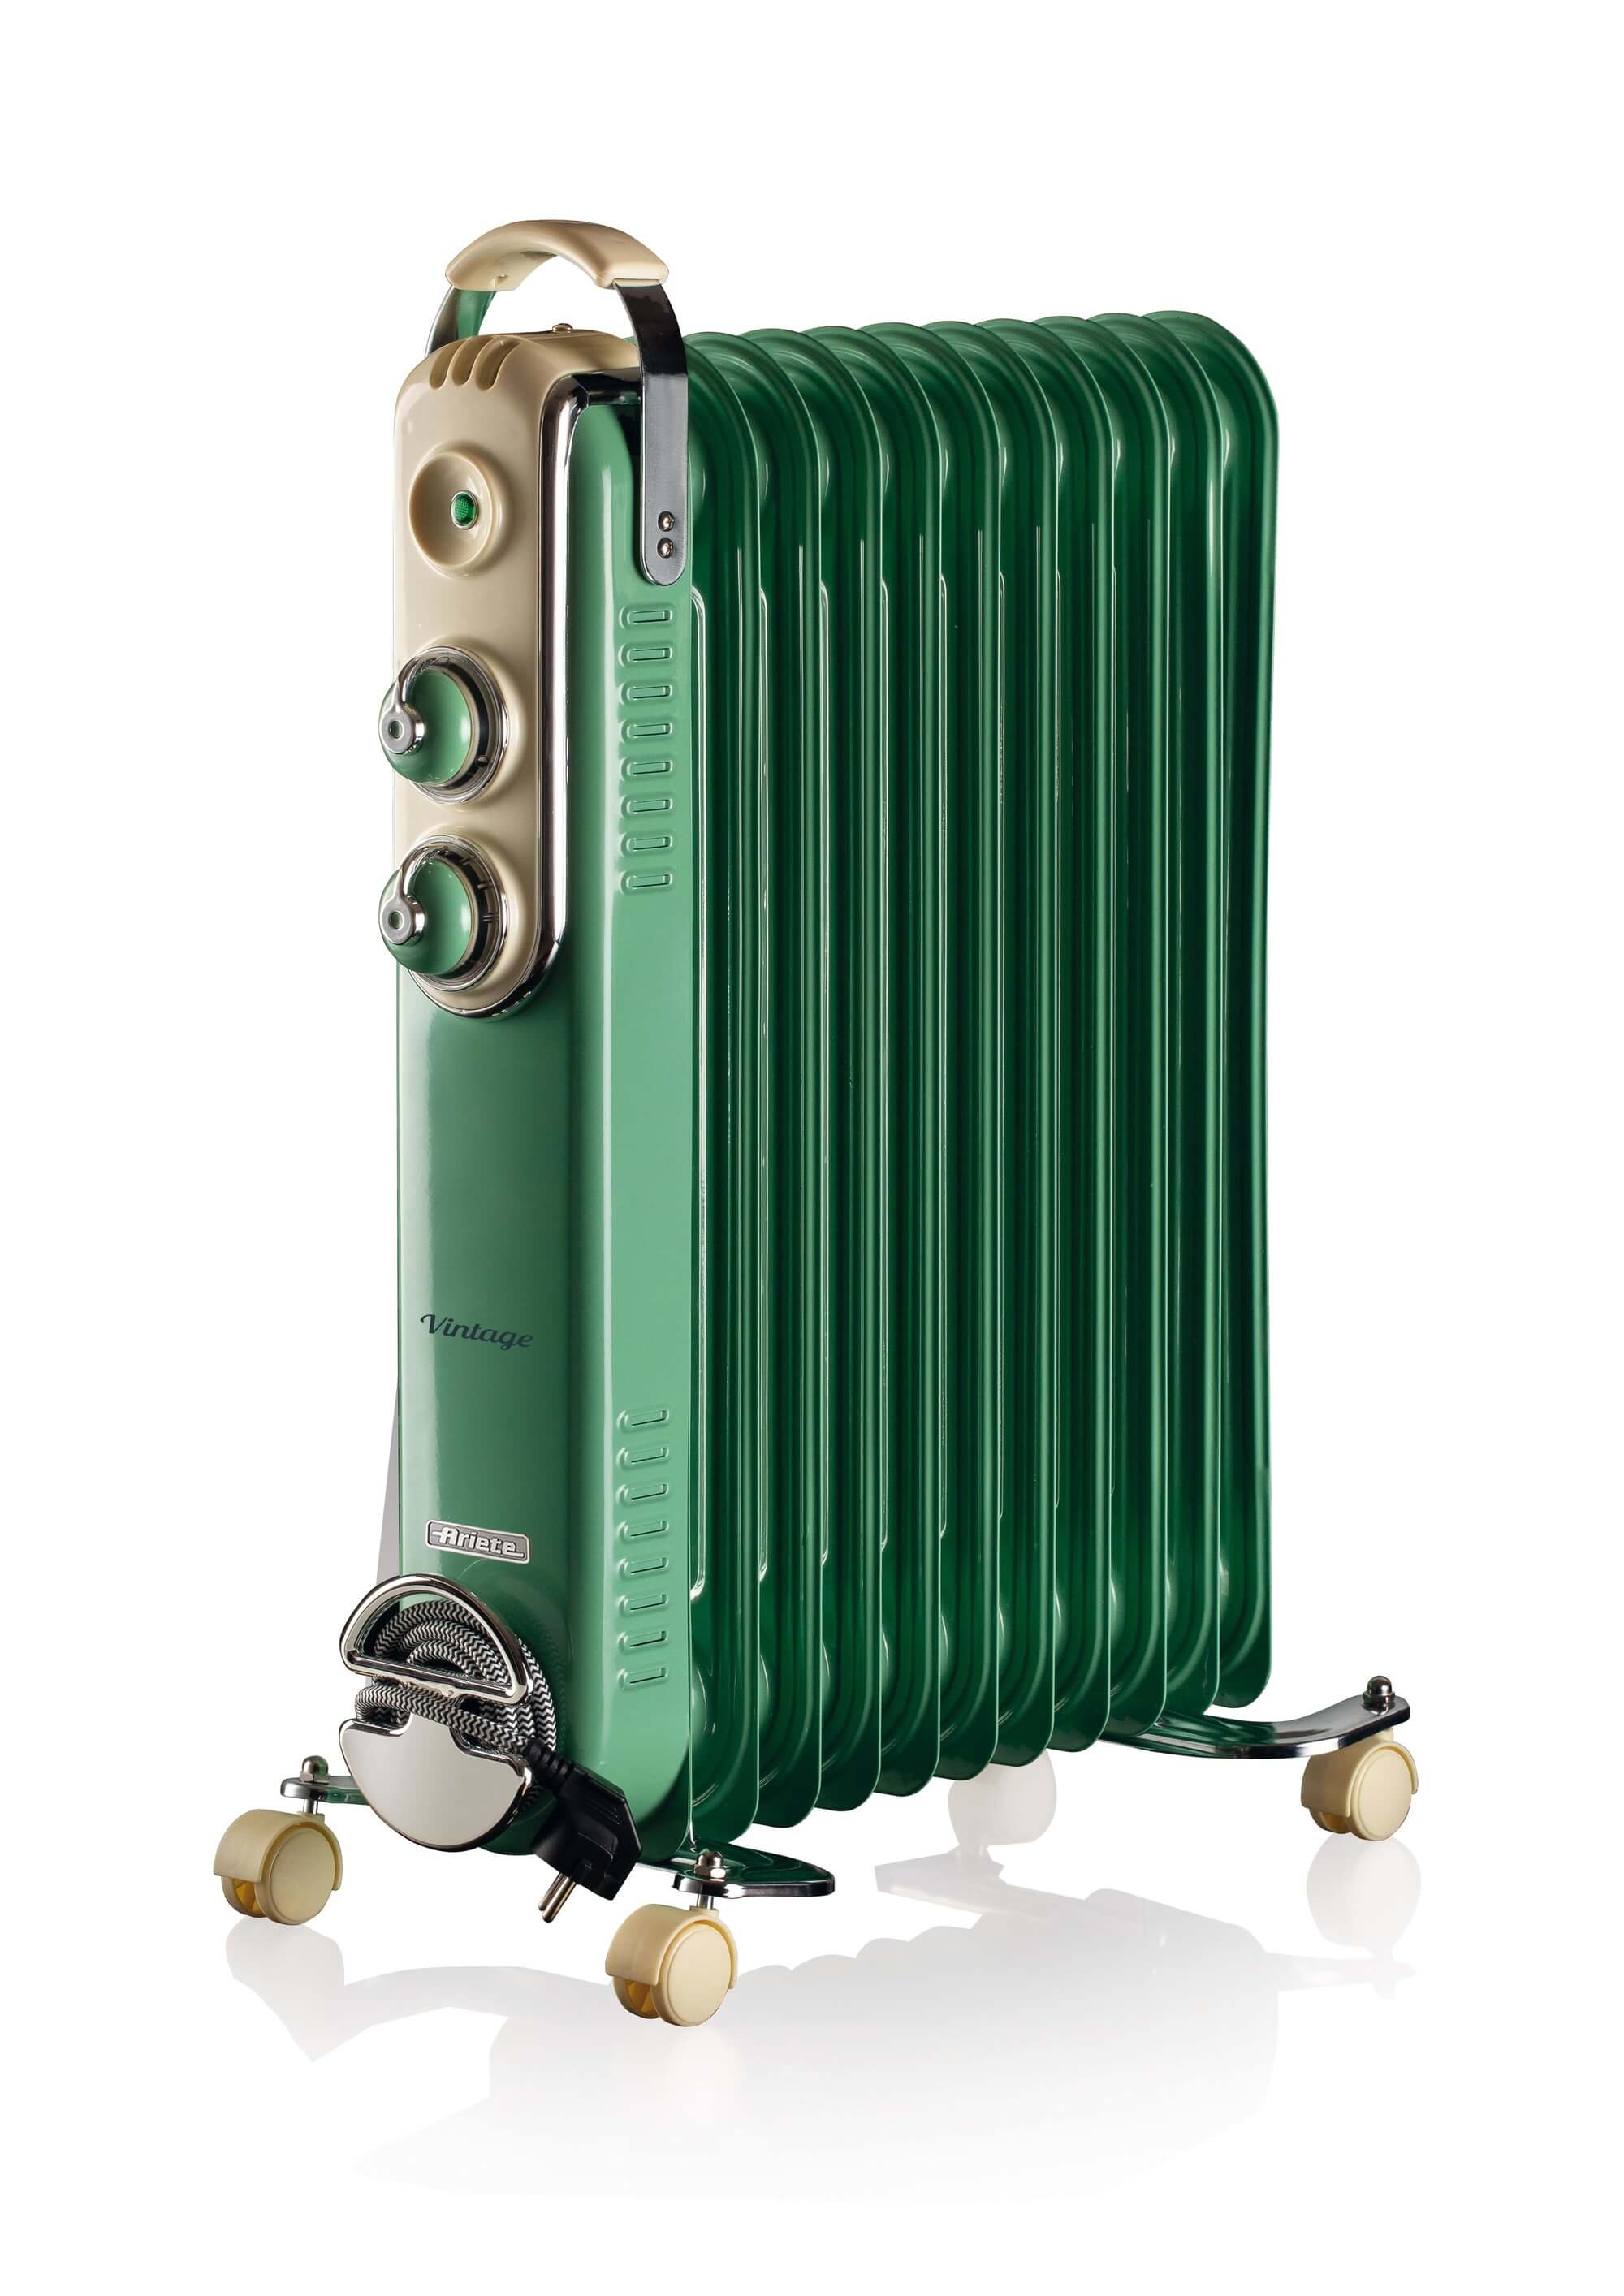 Image of Ariete 839 Radiatore a olio Vintage Verde- 11 elementi riscaldanti - 3 livelli di potenza - Maniglia e ruote per facile trasporto - max 2500 Watt